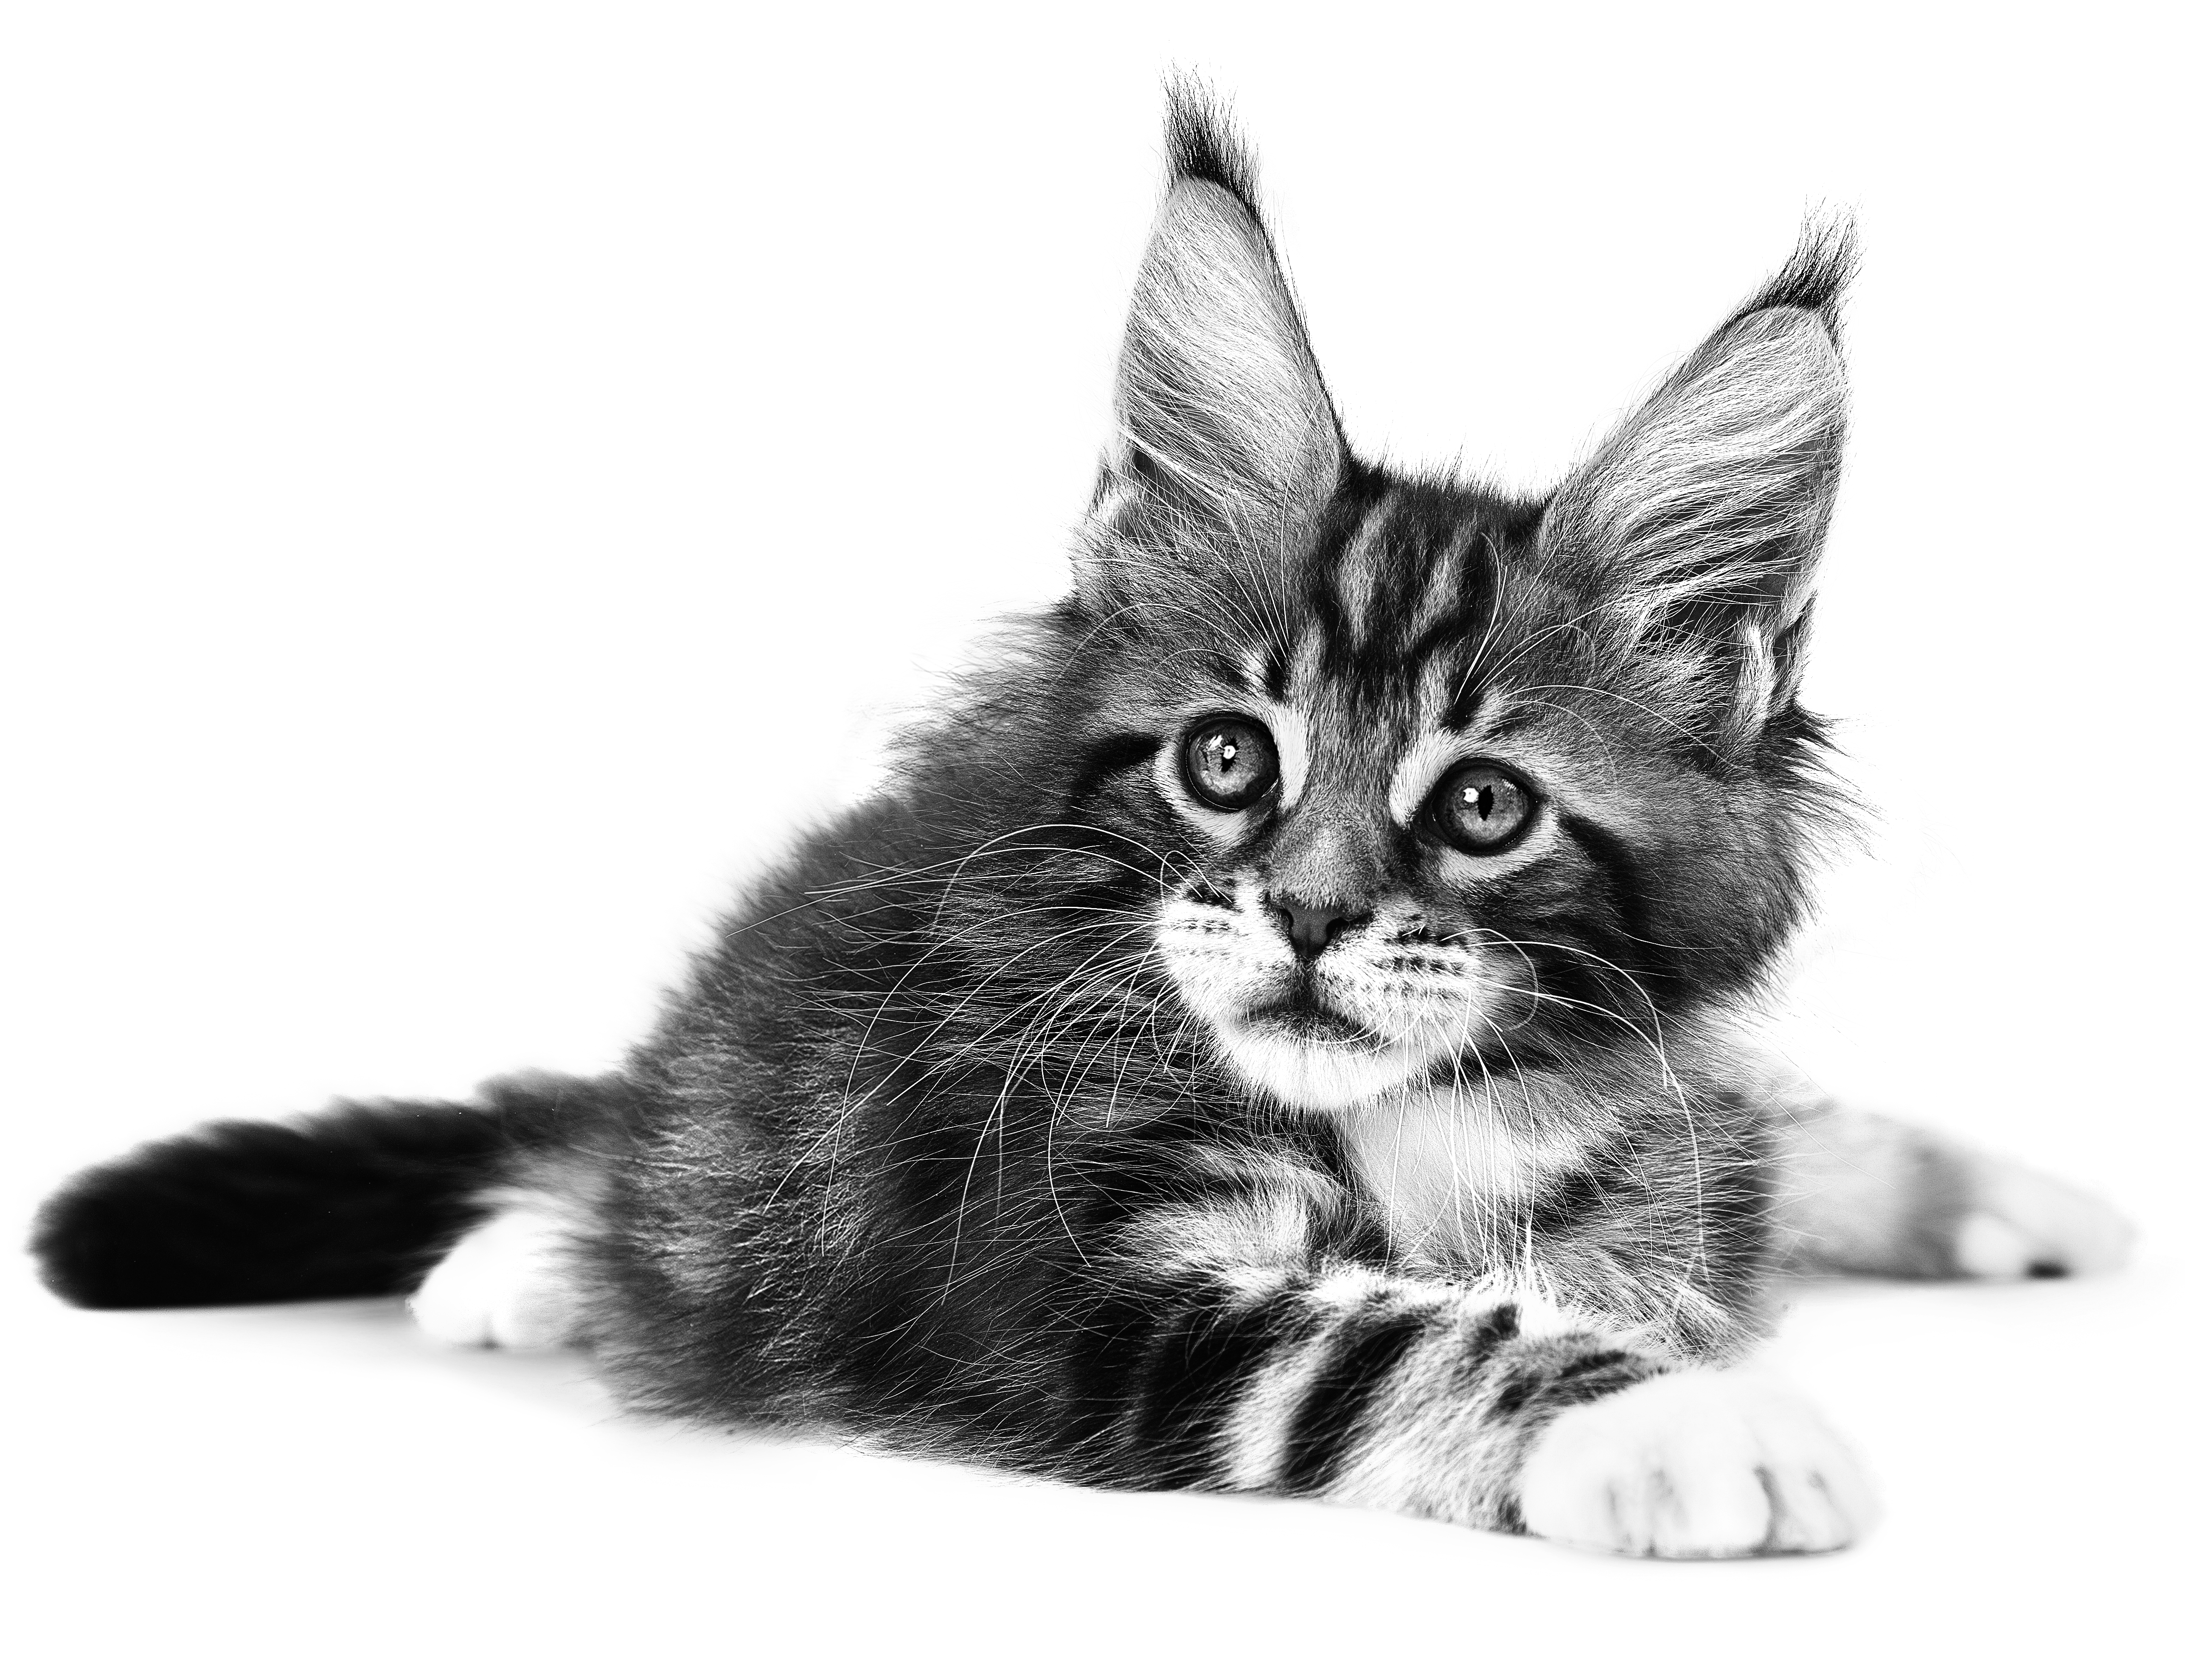 Liggende Maine Coon kitten in zwart-wit op een witte achtergrond